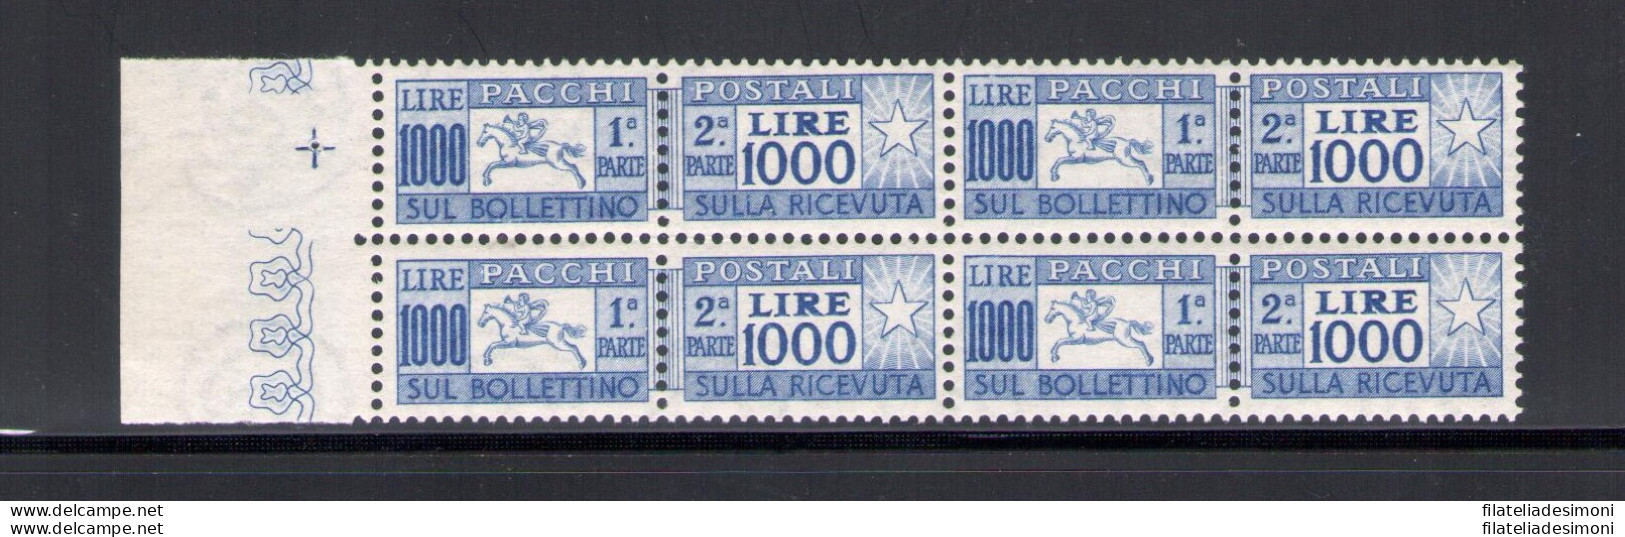 1954 Italia - Repubblica , Pacchi Postali Lire 1000, Cavallino, Certificato Cilio Rarità N. 81, Dentellatura Pettine - - Postal Parcels